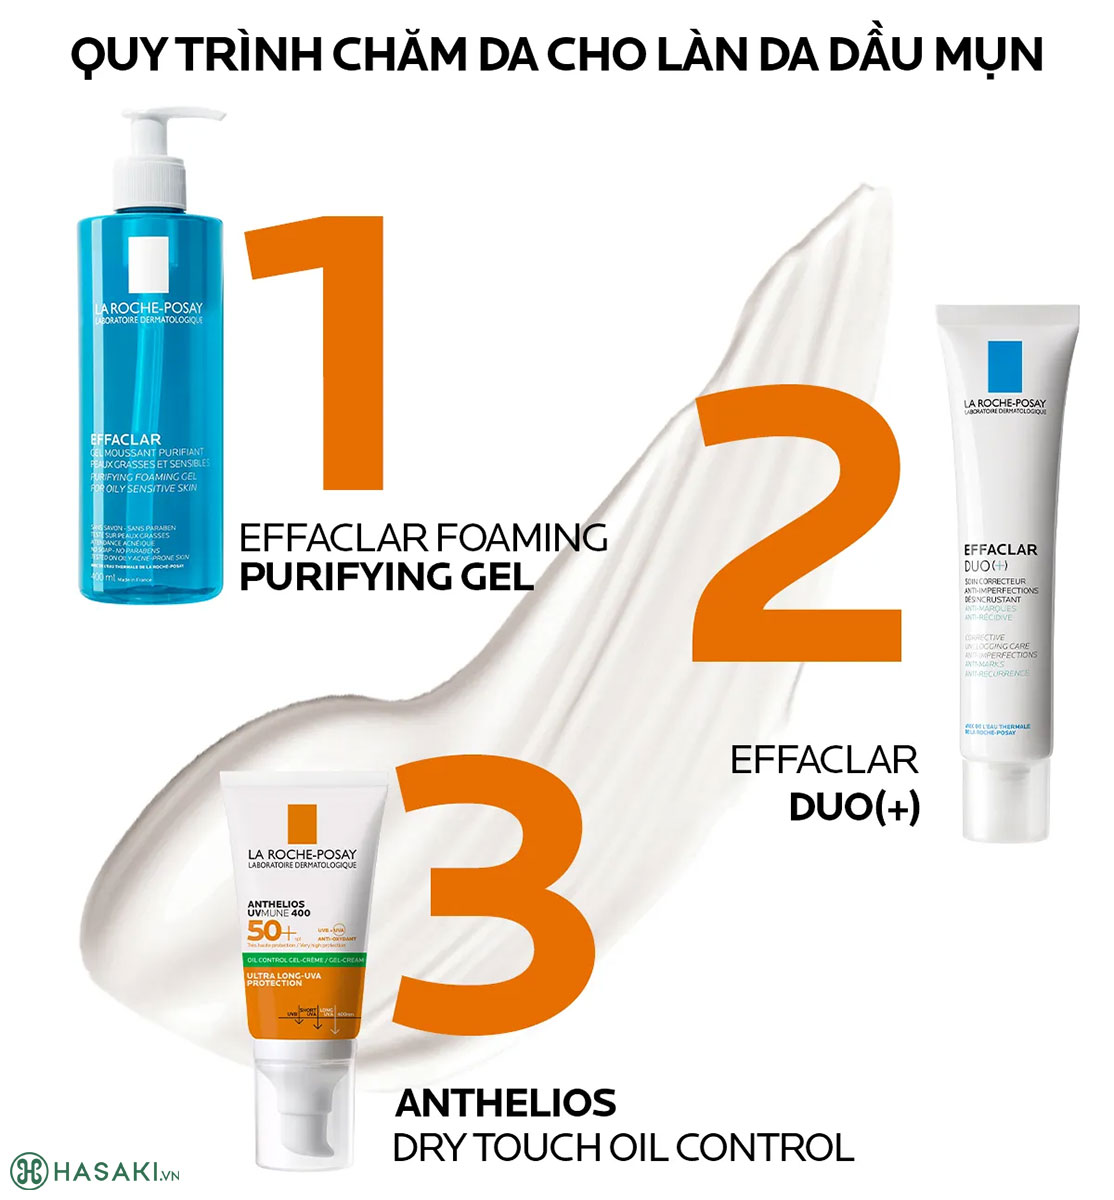 Quy trình chăm sóc làn da dầu mụn với Kem chống nắng La Roche-Posay Anthelios UV Mune 400 Oil Control Gel-Cream